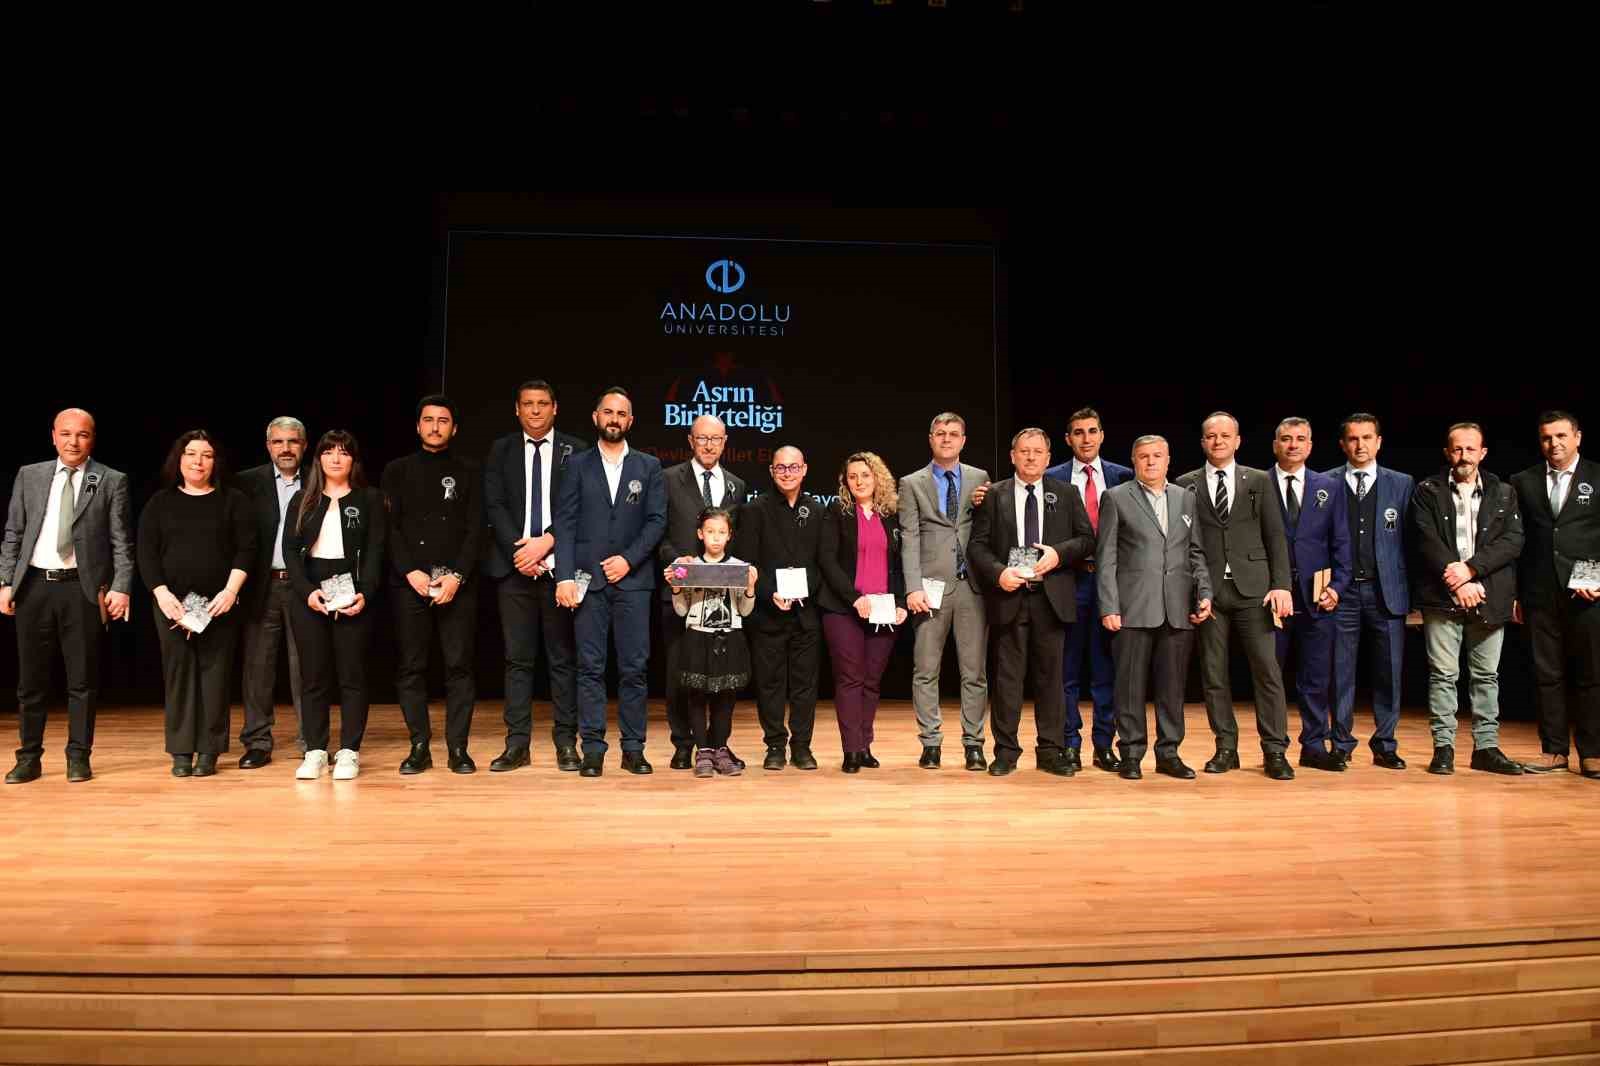 Anadolu Üniversitesi’nde ’Asrın Birlikteliği’ anma töreni gerçekleştirildi